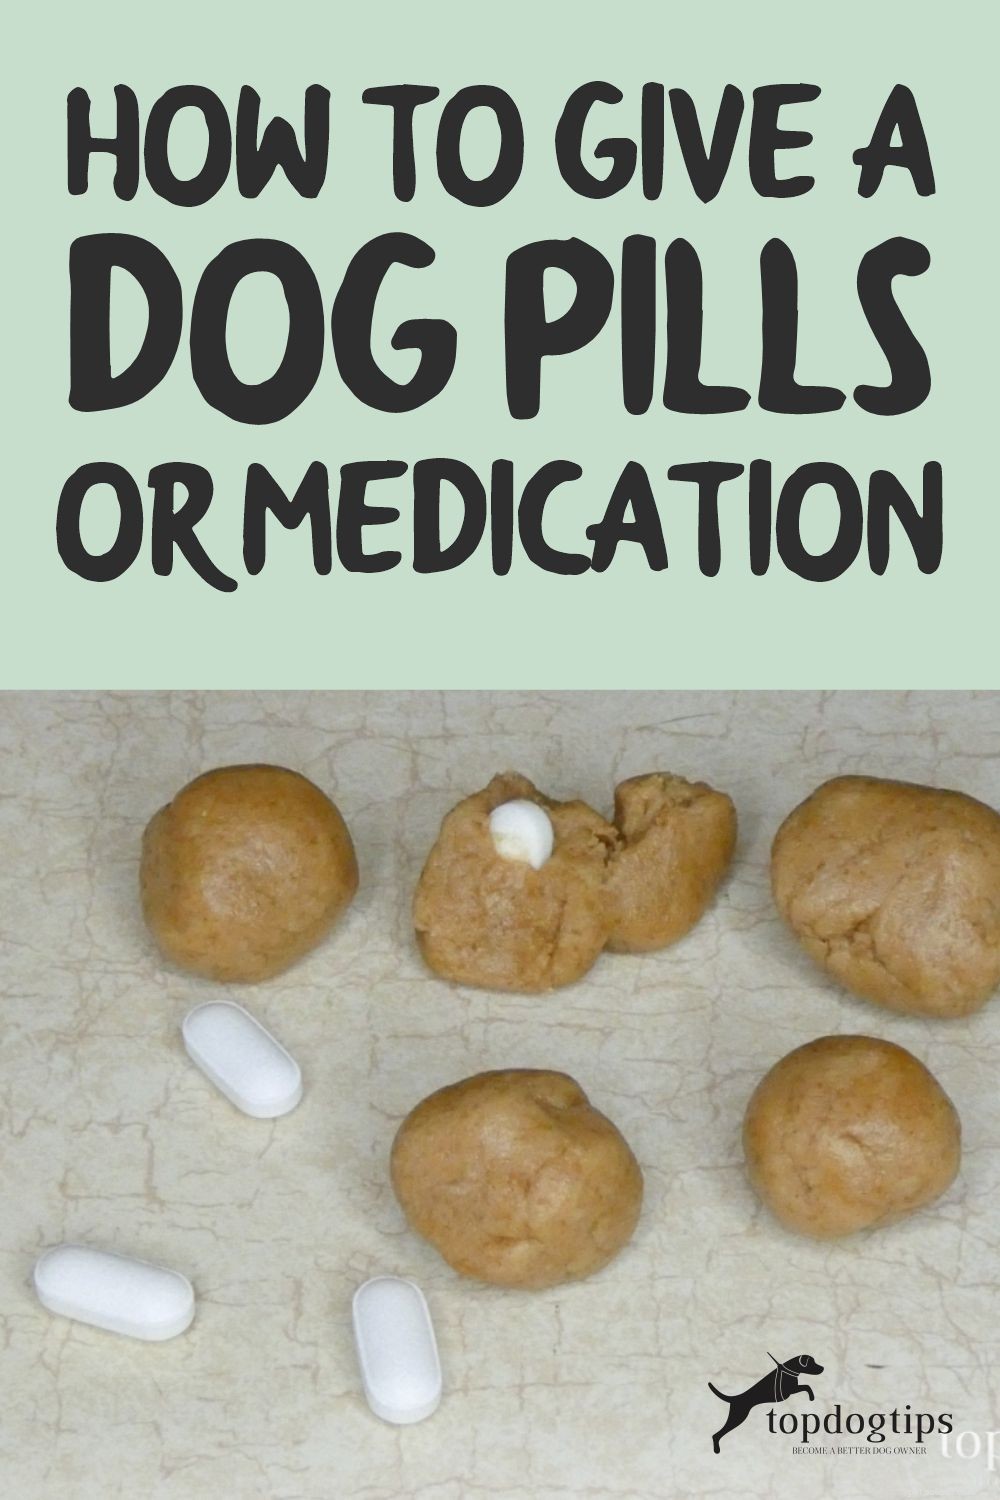 Как давать собаке таблетки или лекарства